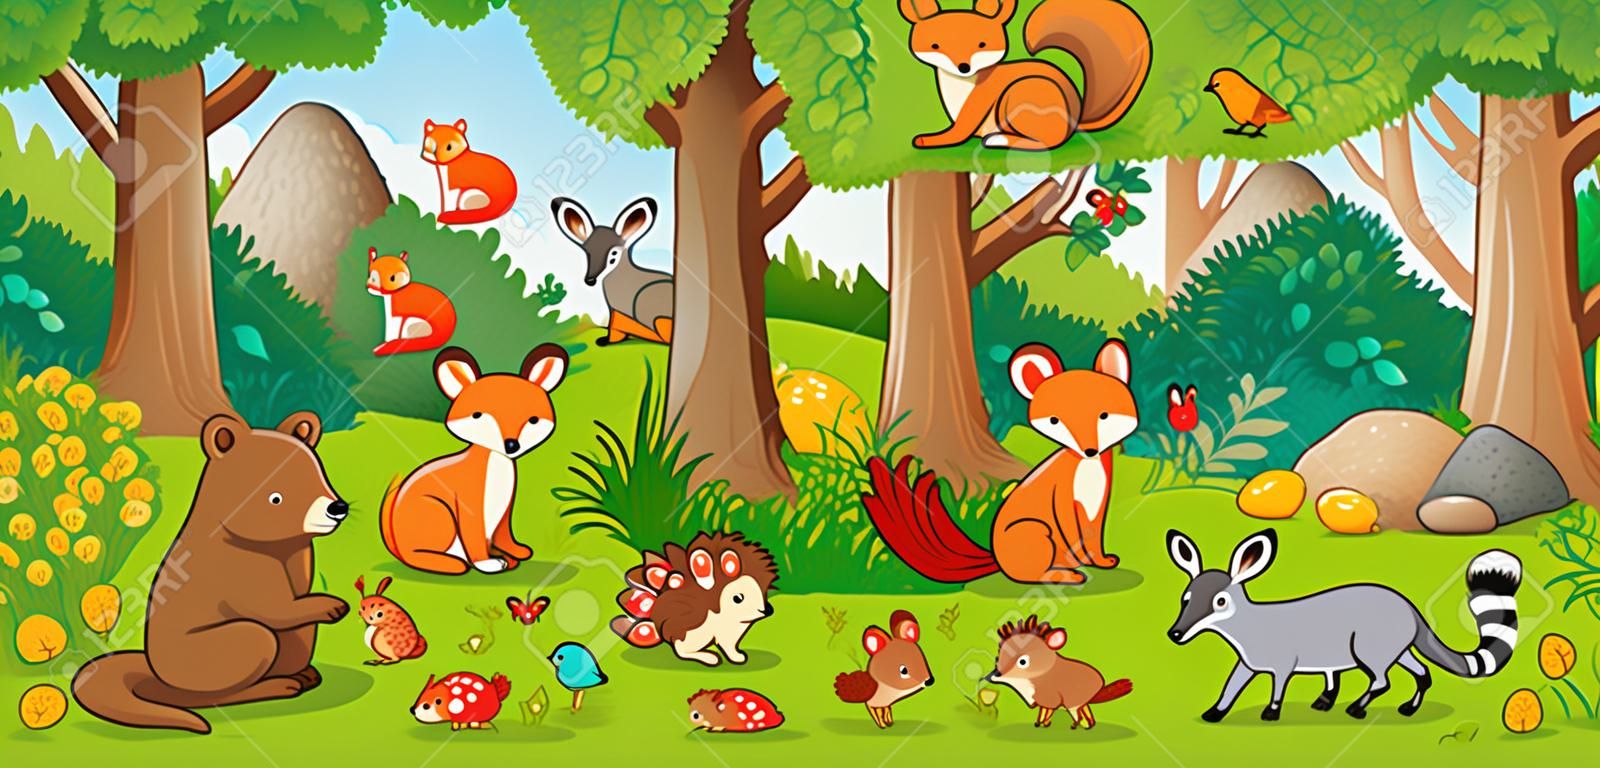 矢量圖和兒童風格的可愛森林動物。一組在森林裡的哺乳動物。以兒童風格收藏。